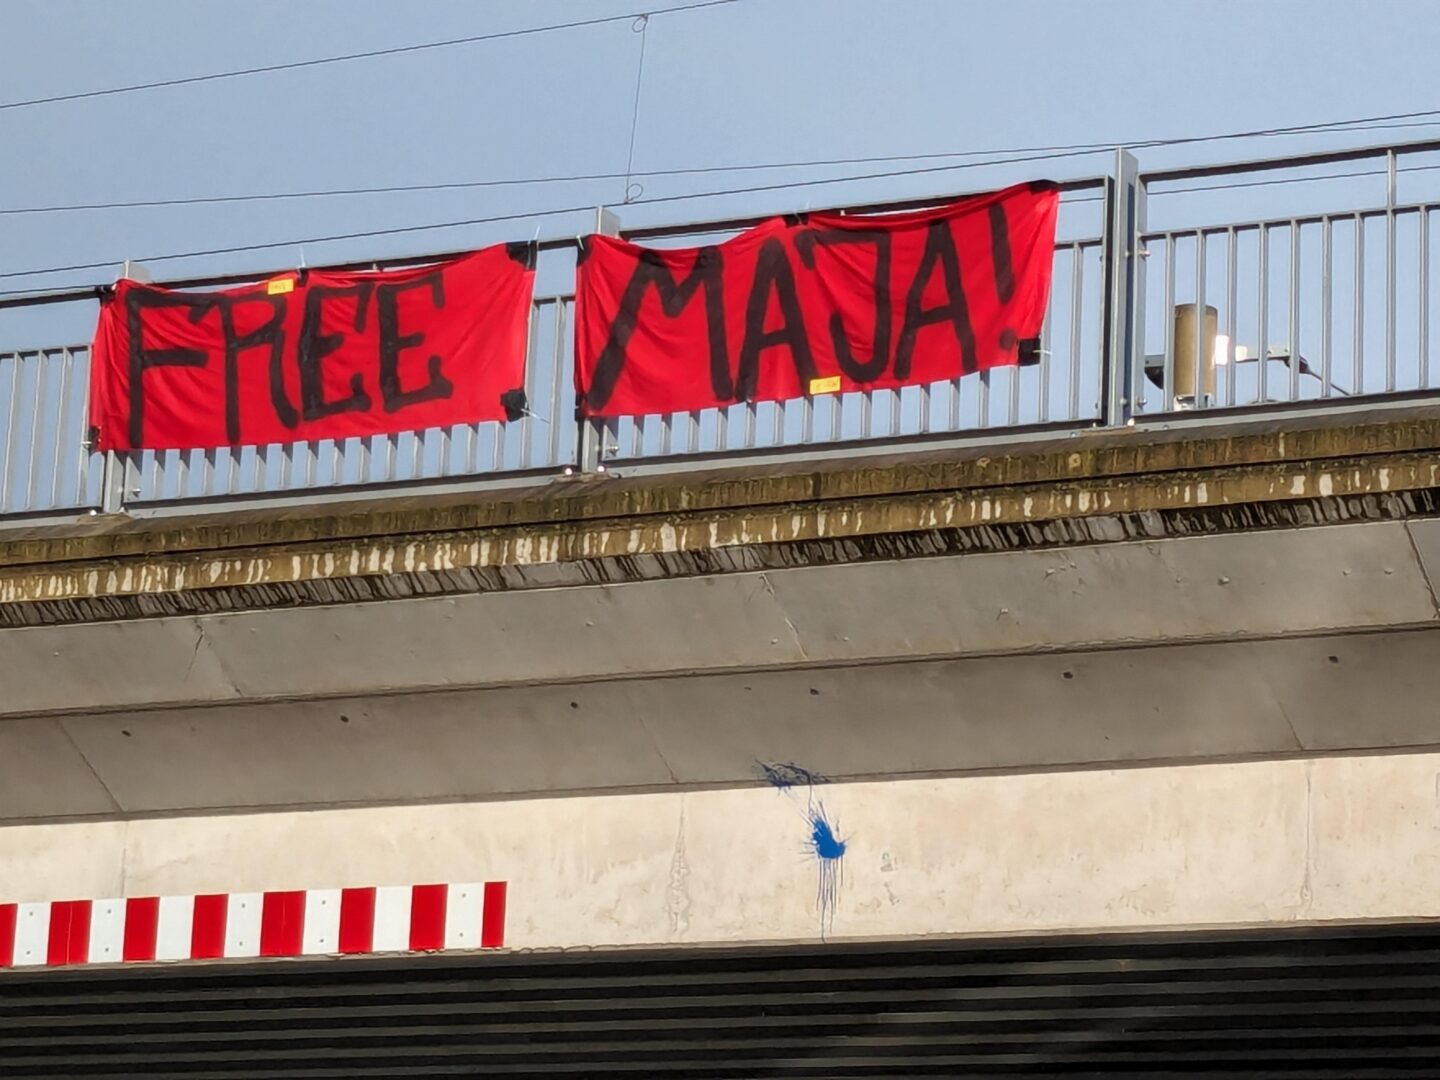 Free Maja steht auf einem Transparent an einer Brücke in Dresden